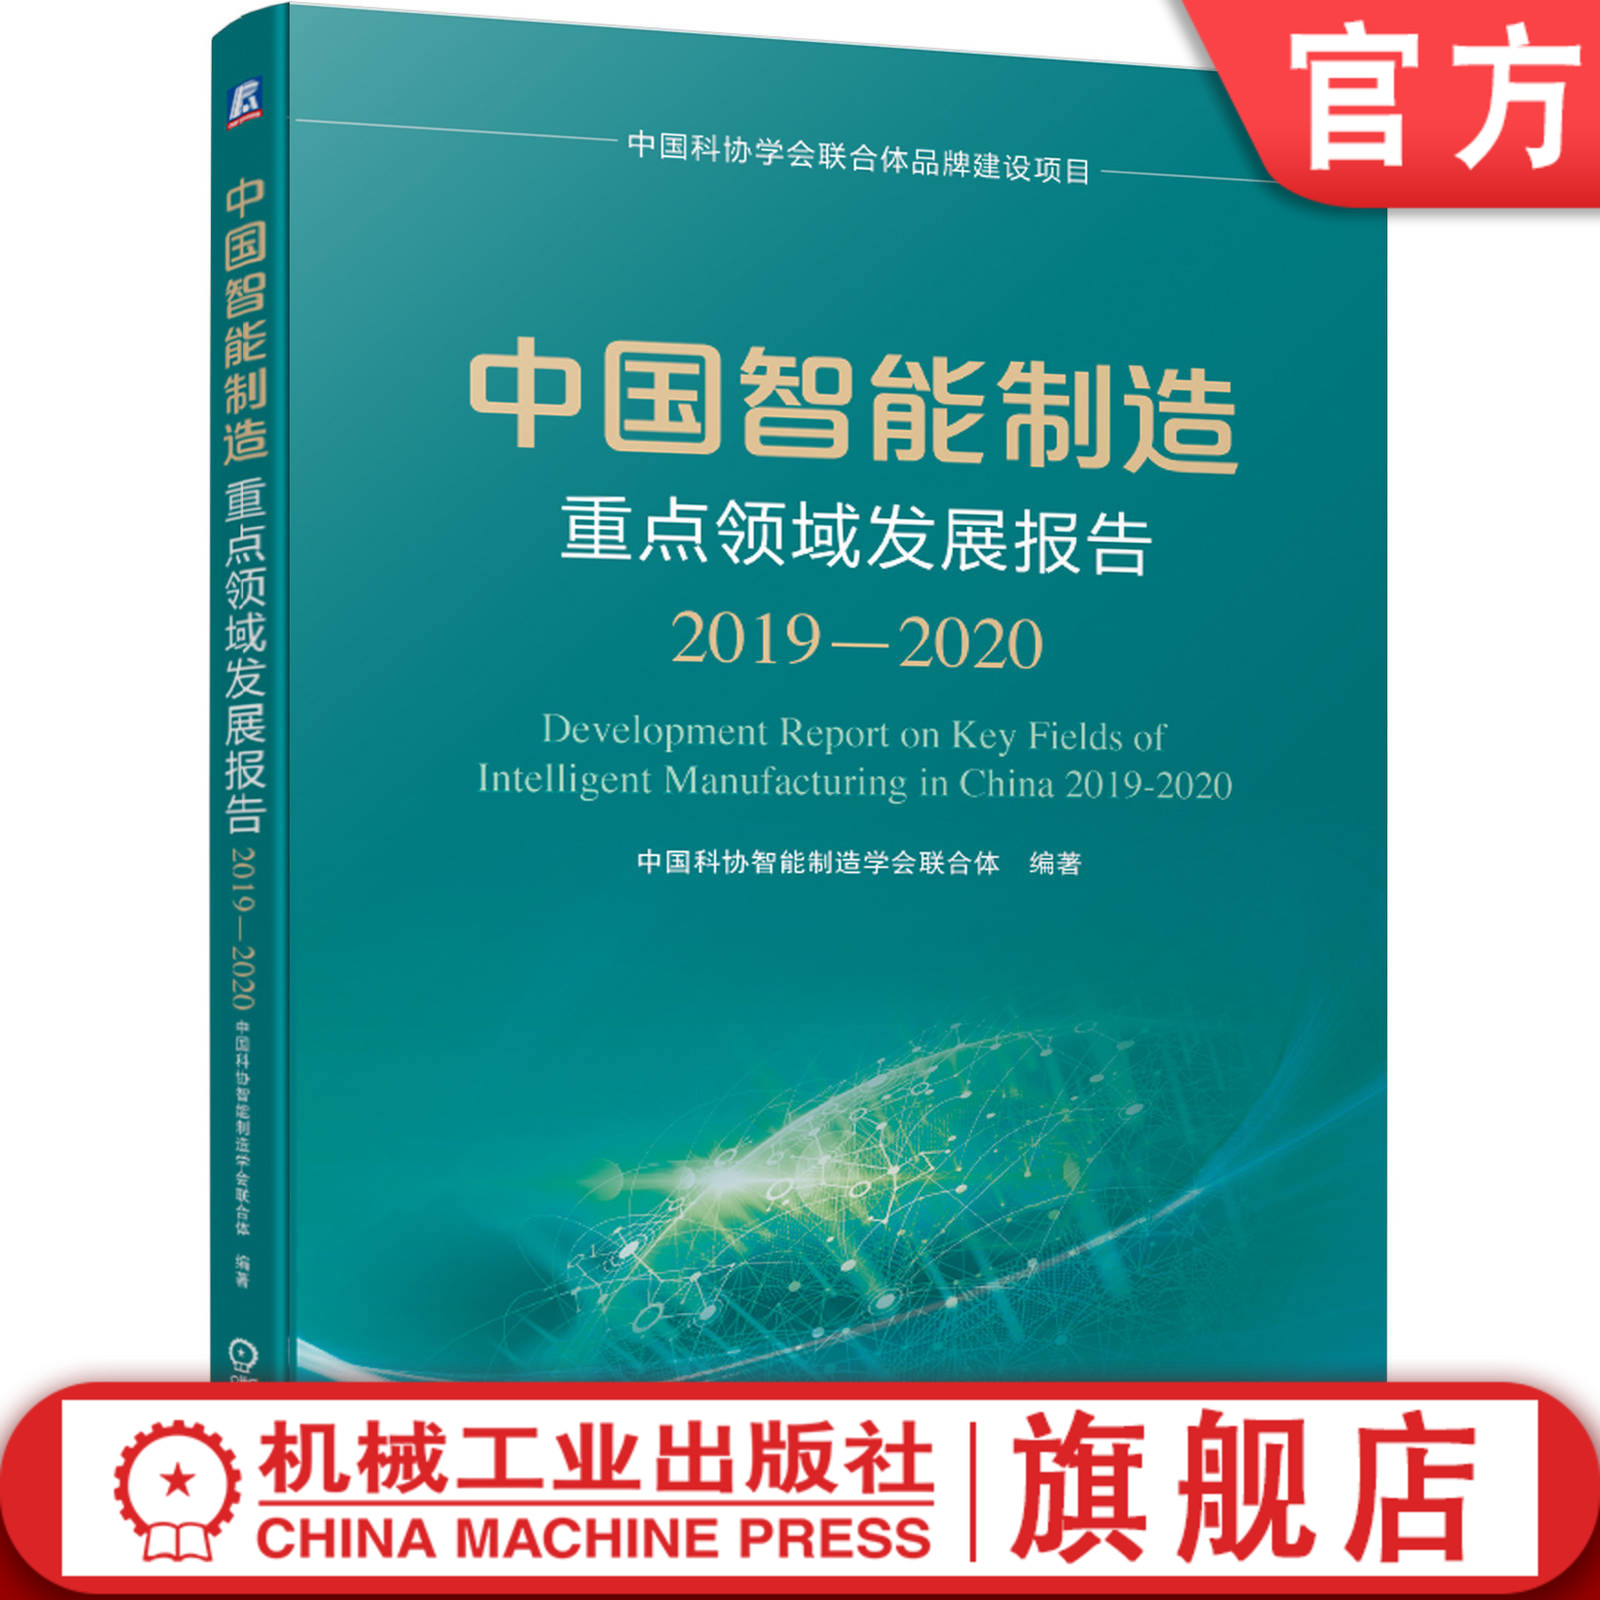 官方现货 中国智能制造重点领域发展报告2019-2020 中国科协智能制造学会联合体 9787111667148机械工业出版社